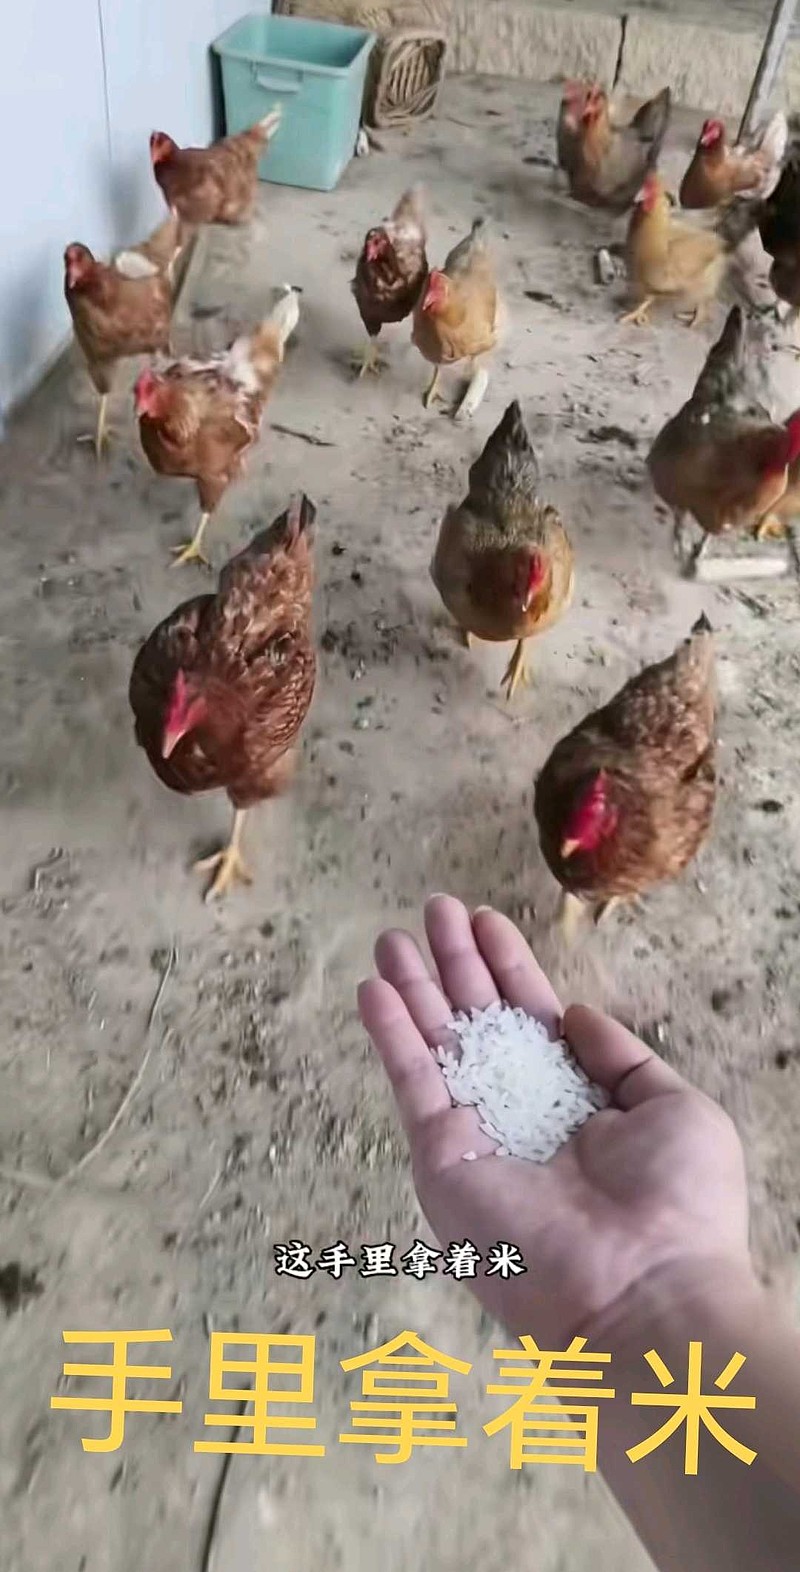 手里放着米，鸡才会追着你<br